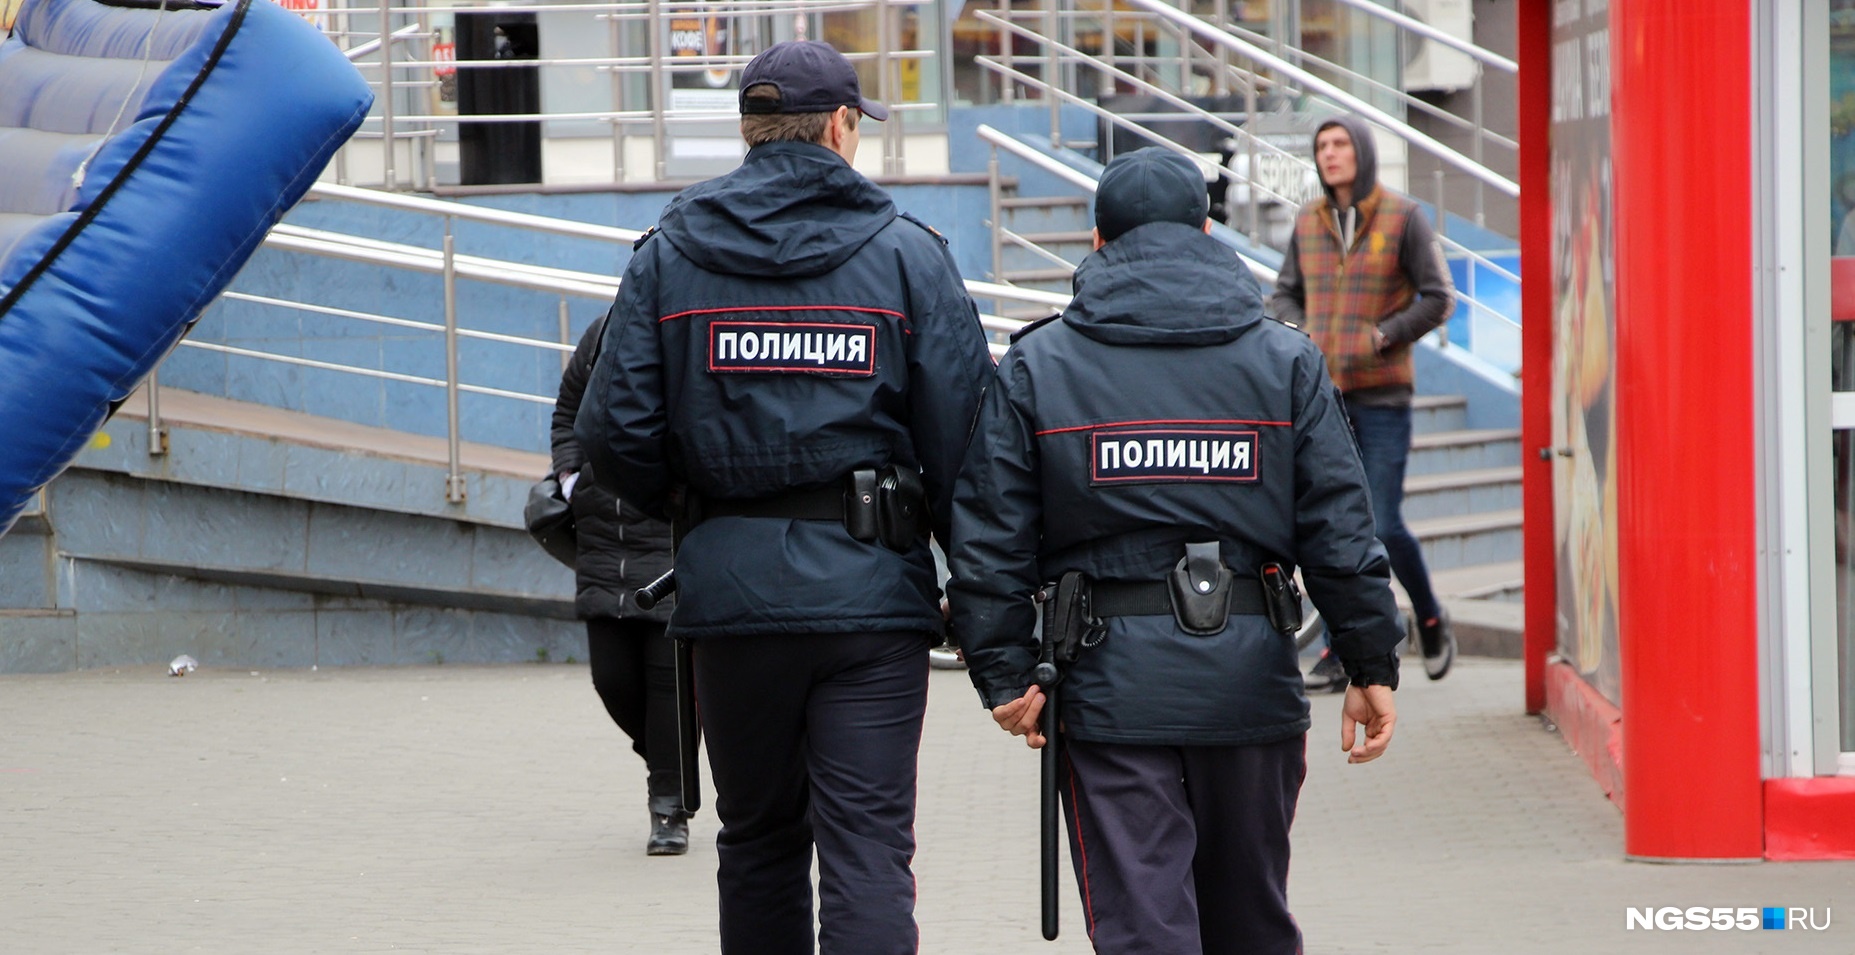 Стрельбой по детям у железнодорожного вокзала в Омске заинтересовалась прокуратура